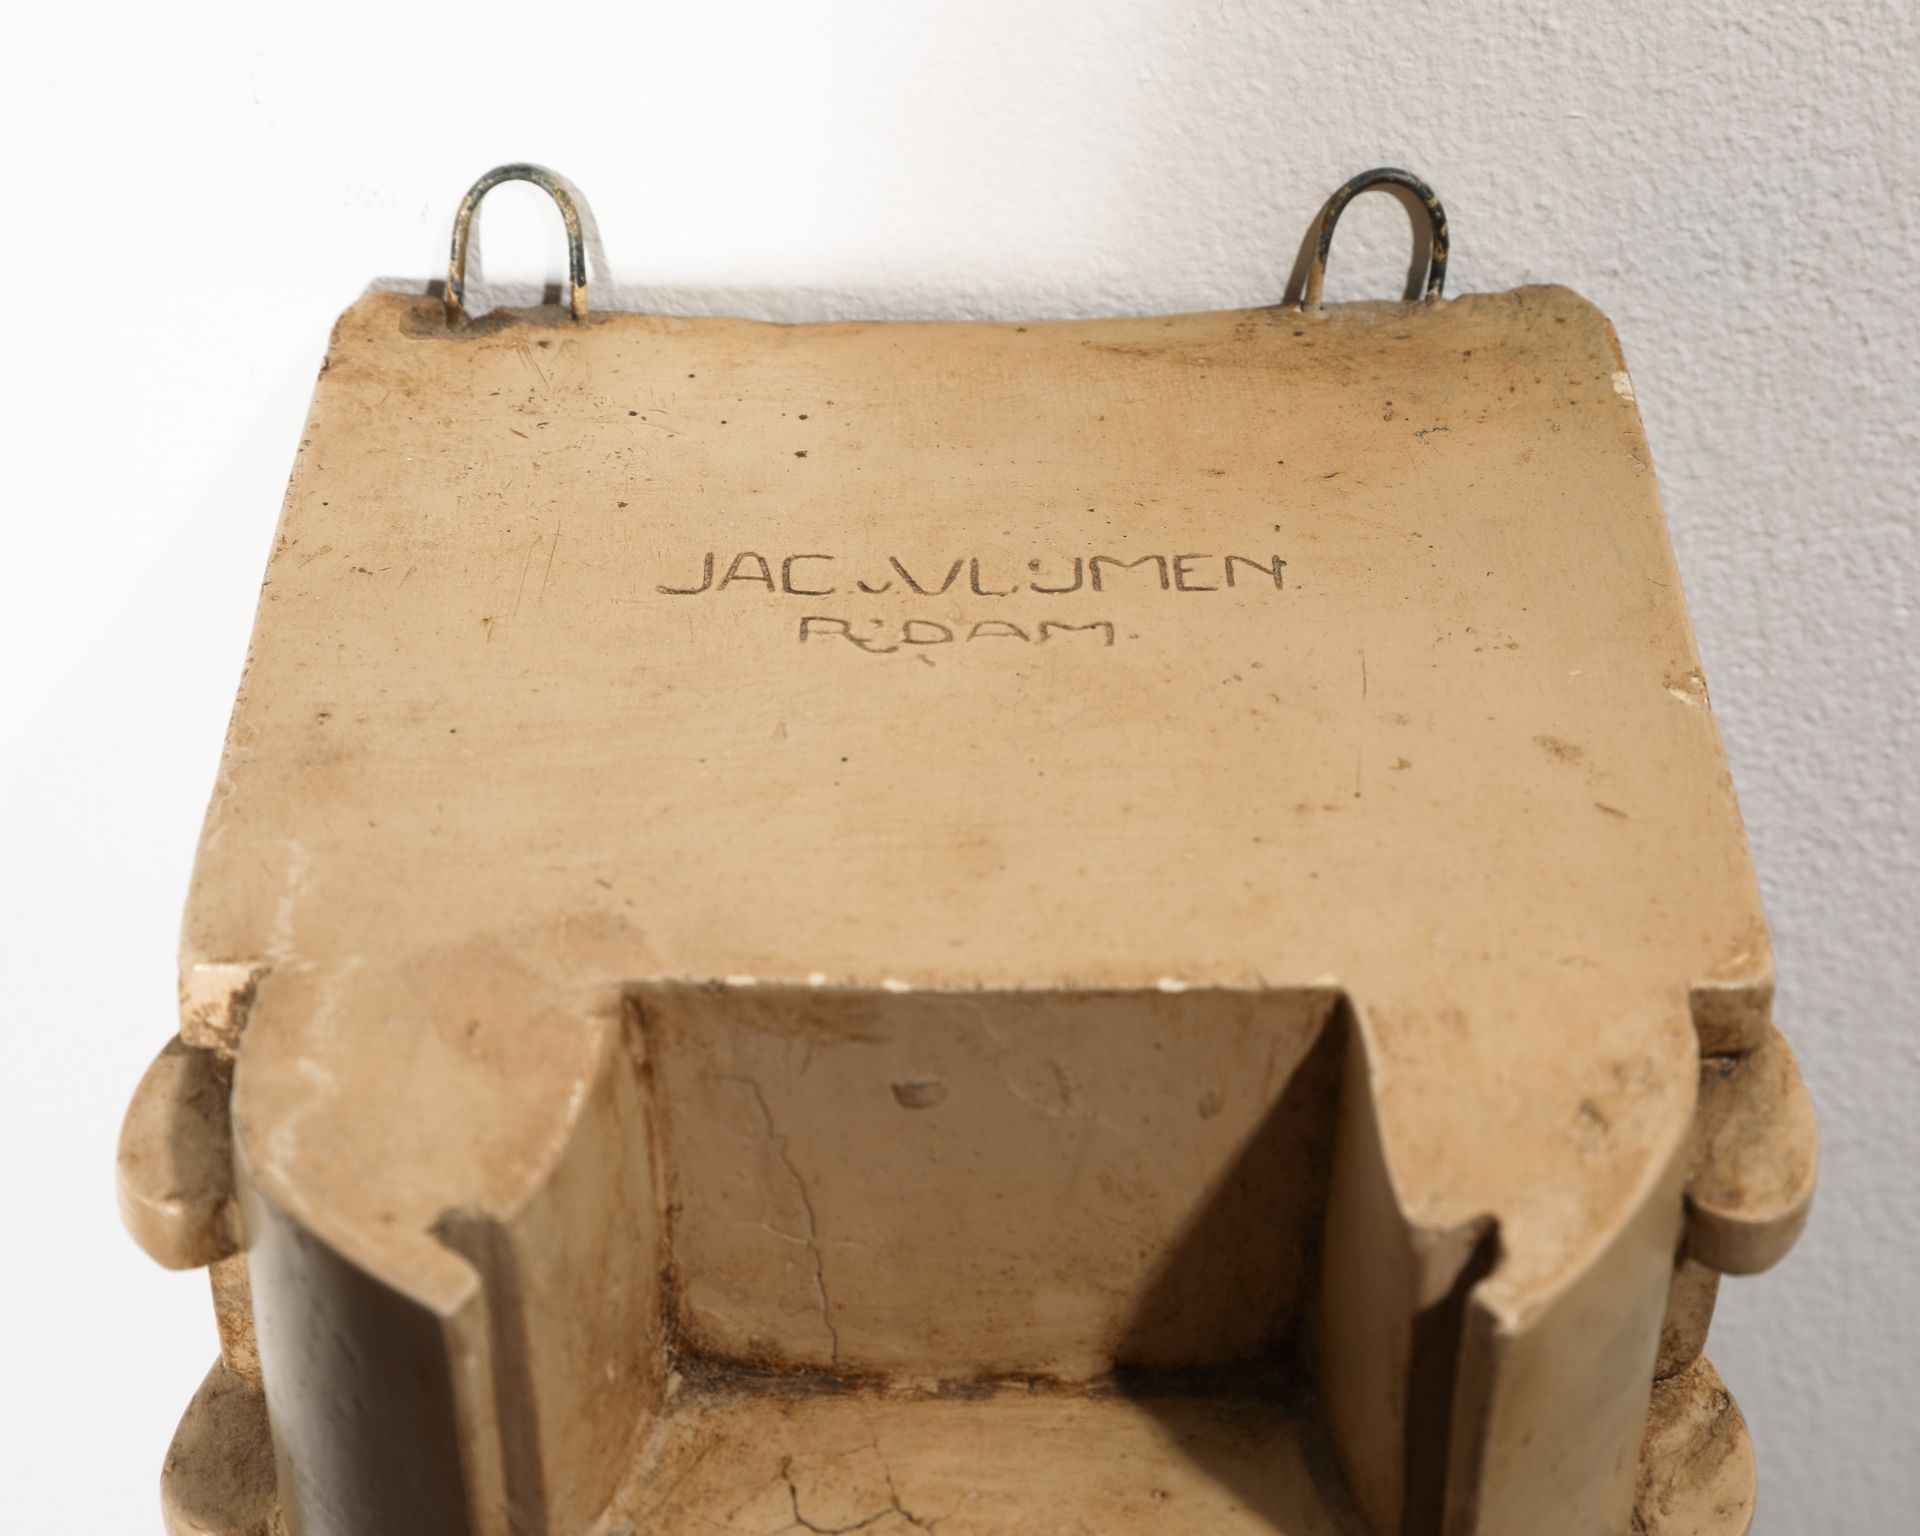 Jac. van Vlijmen, Prototype of an Art Deco wall lamp - Image 5 of 6